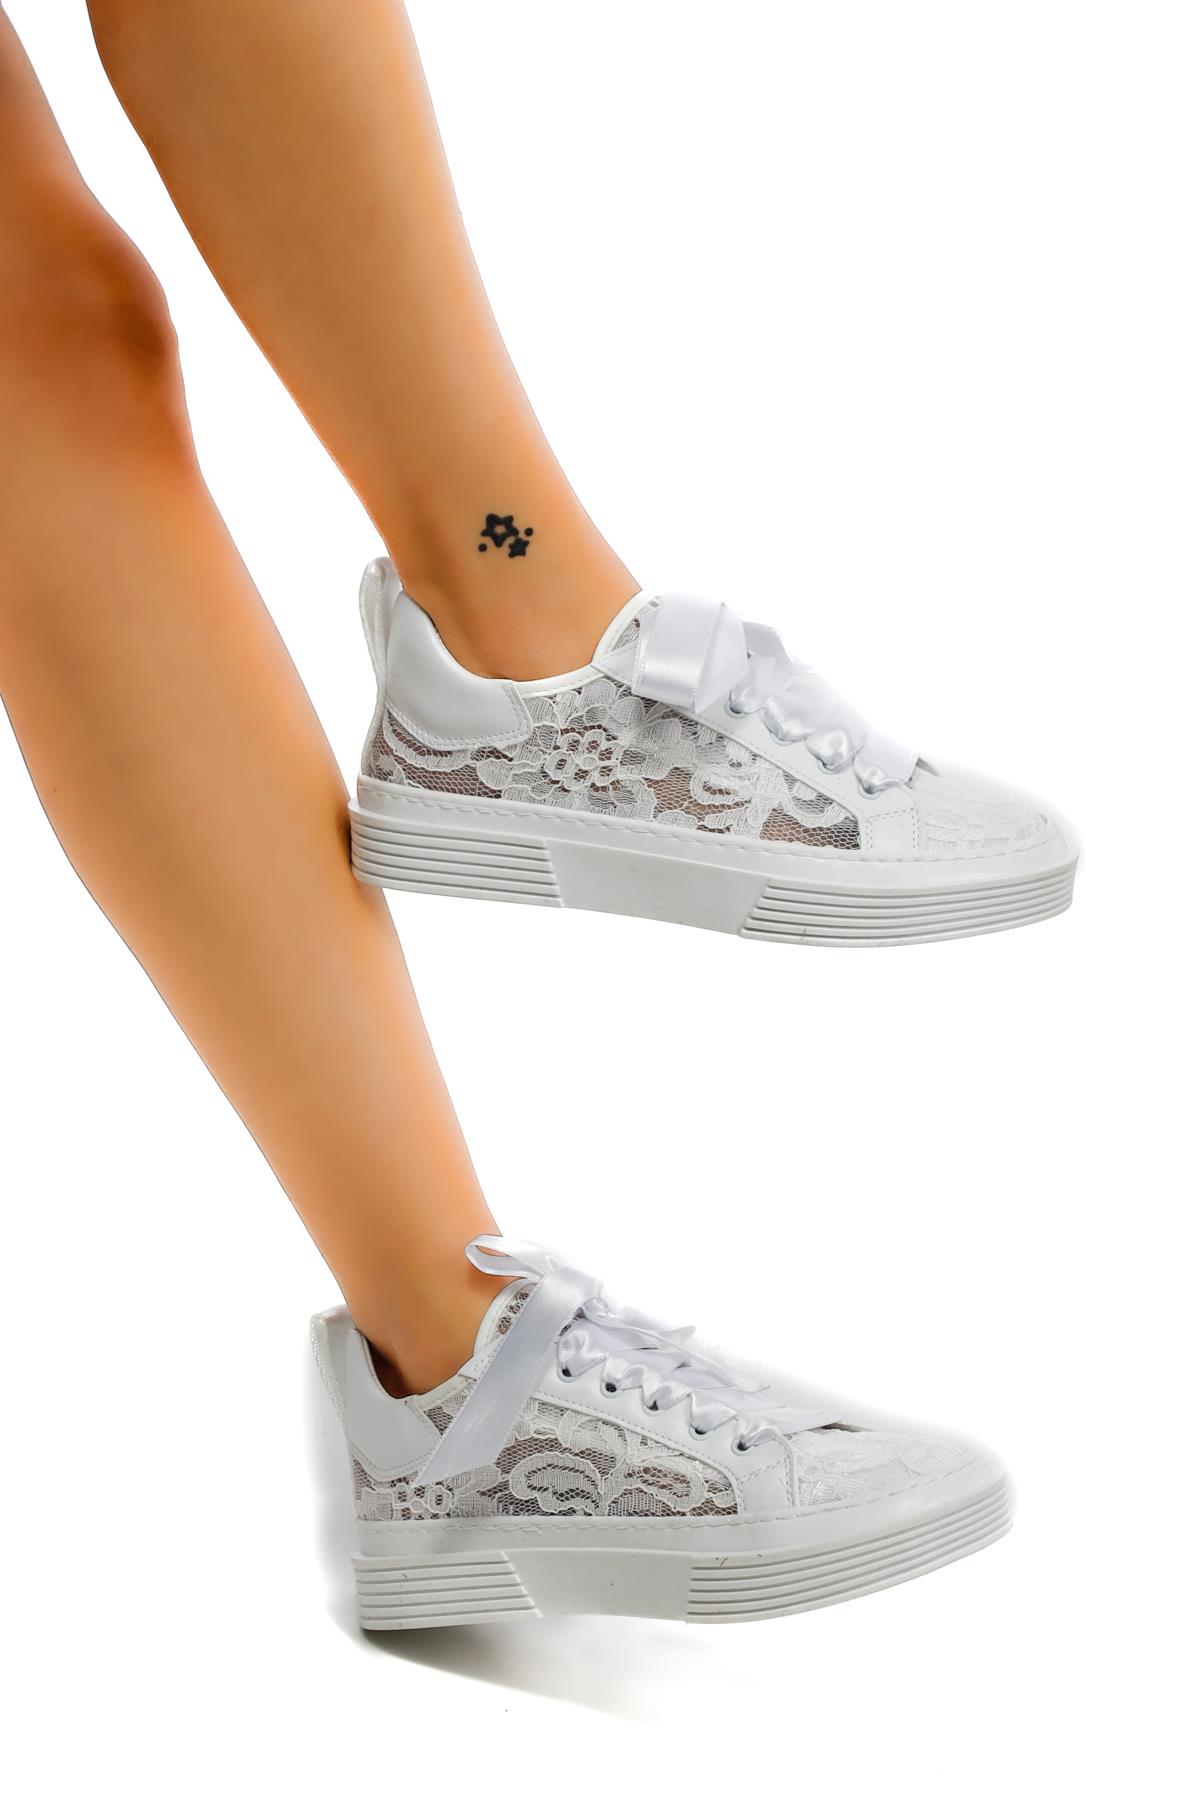 Beyaz Dantel Sneakers Kadın Ayakkabı Arley - Feyz istanbul